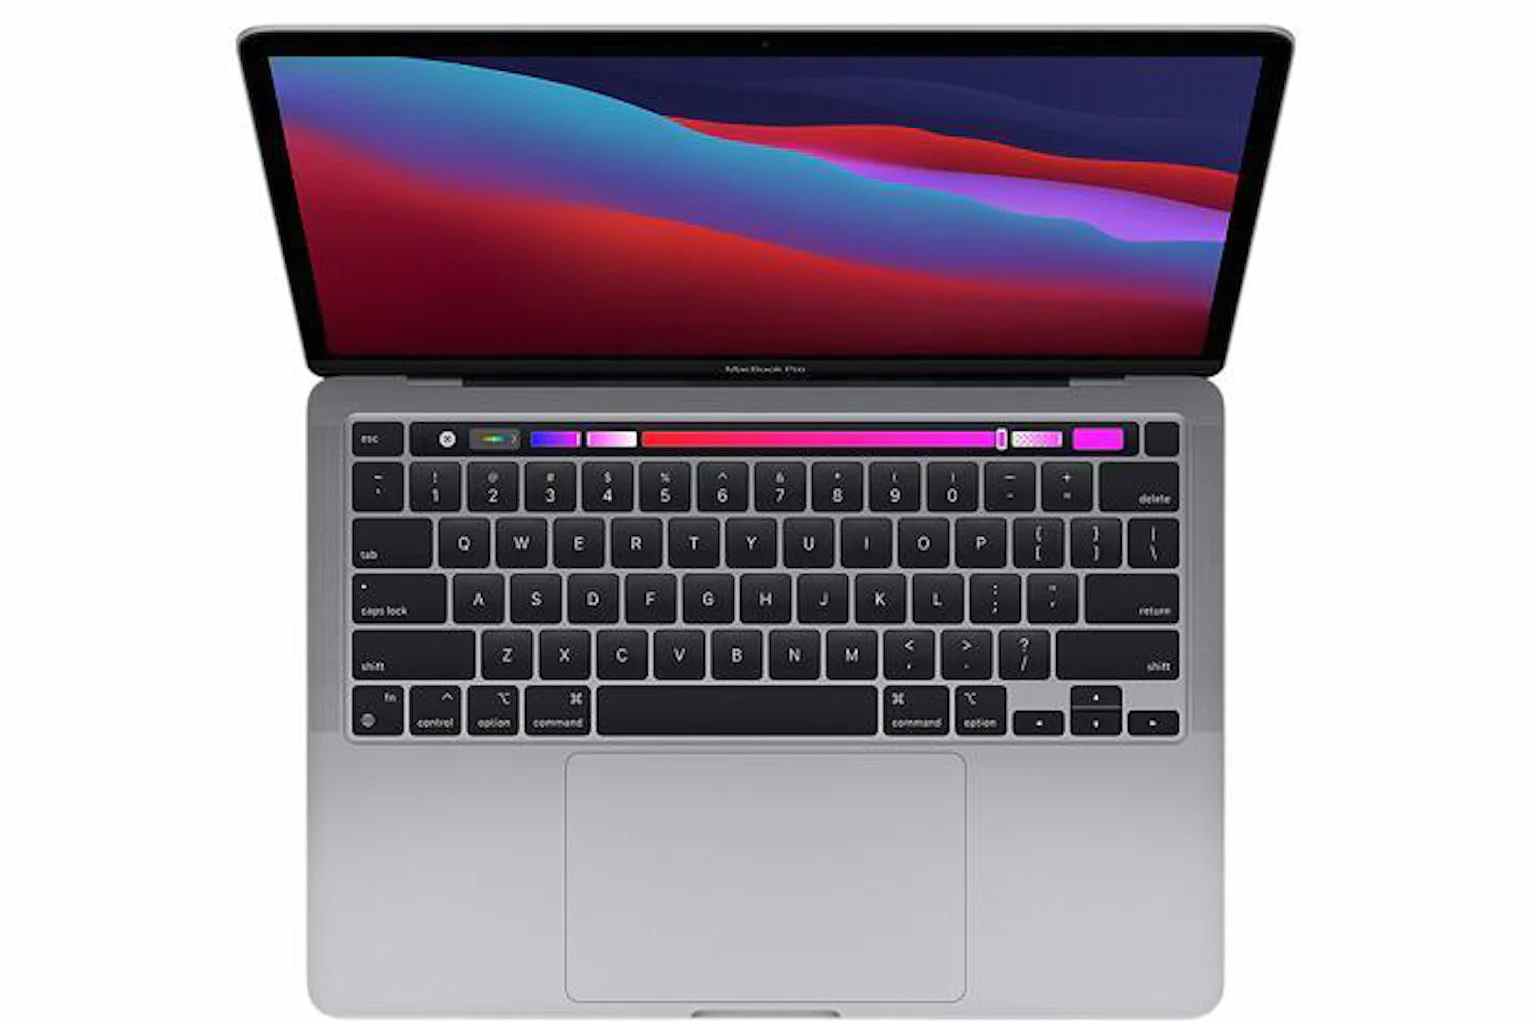 Apple Macbook Pro M1 13 pouces remis à neuf certifié Apple